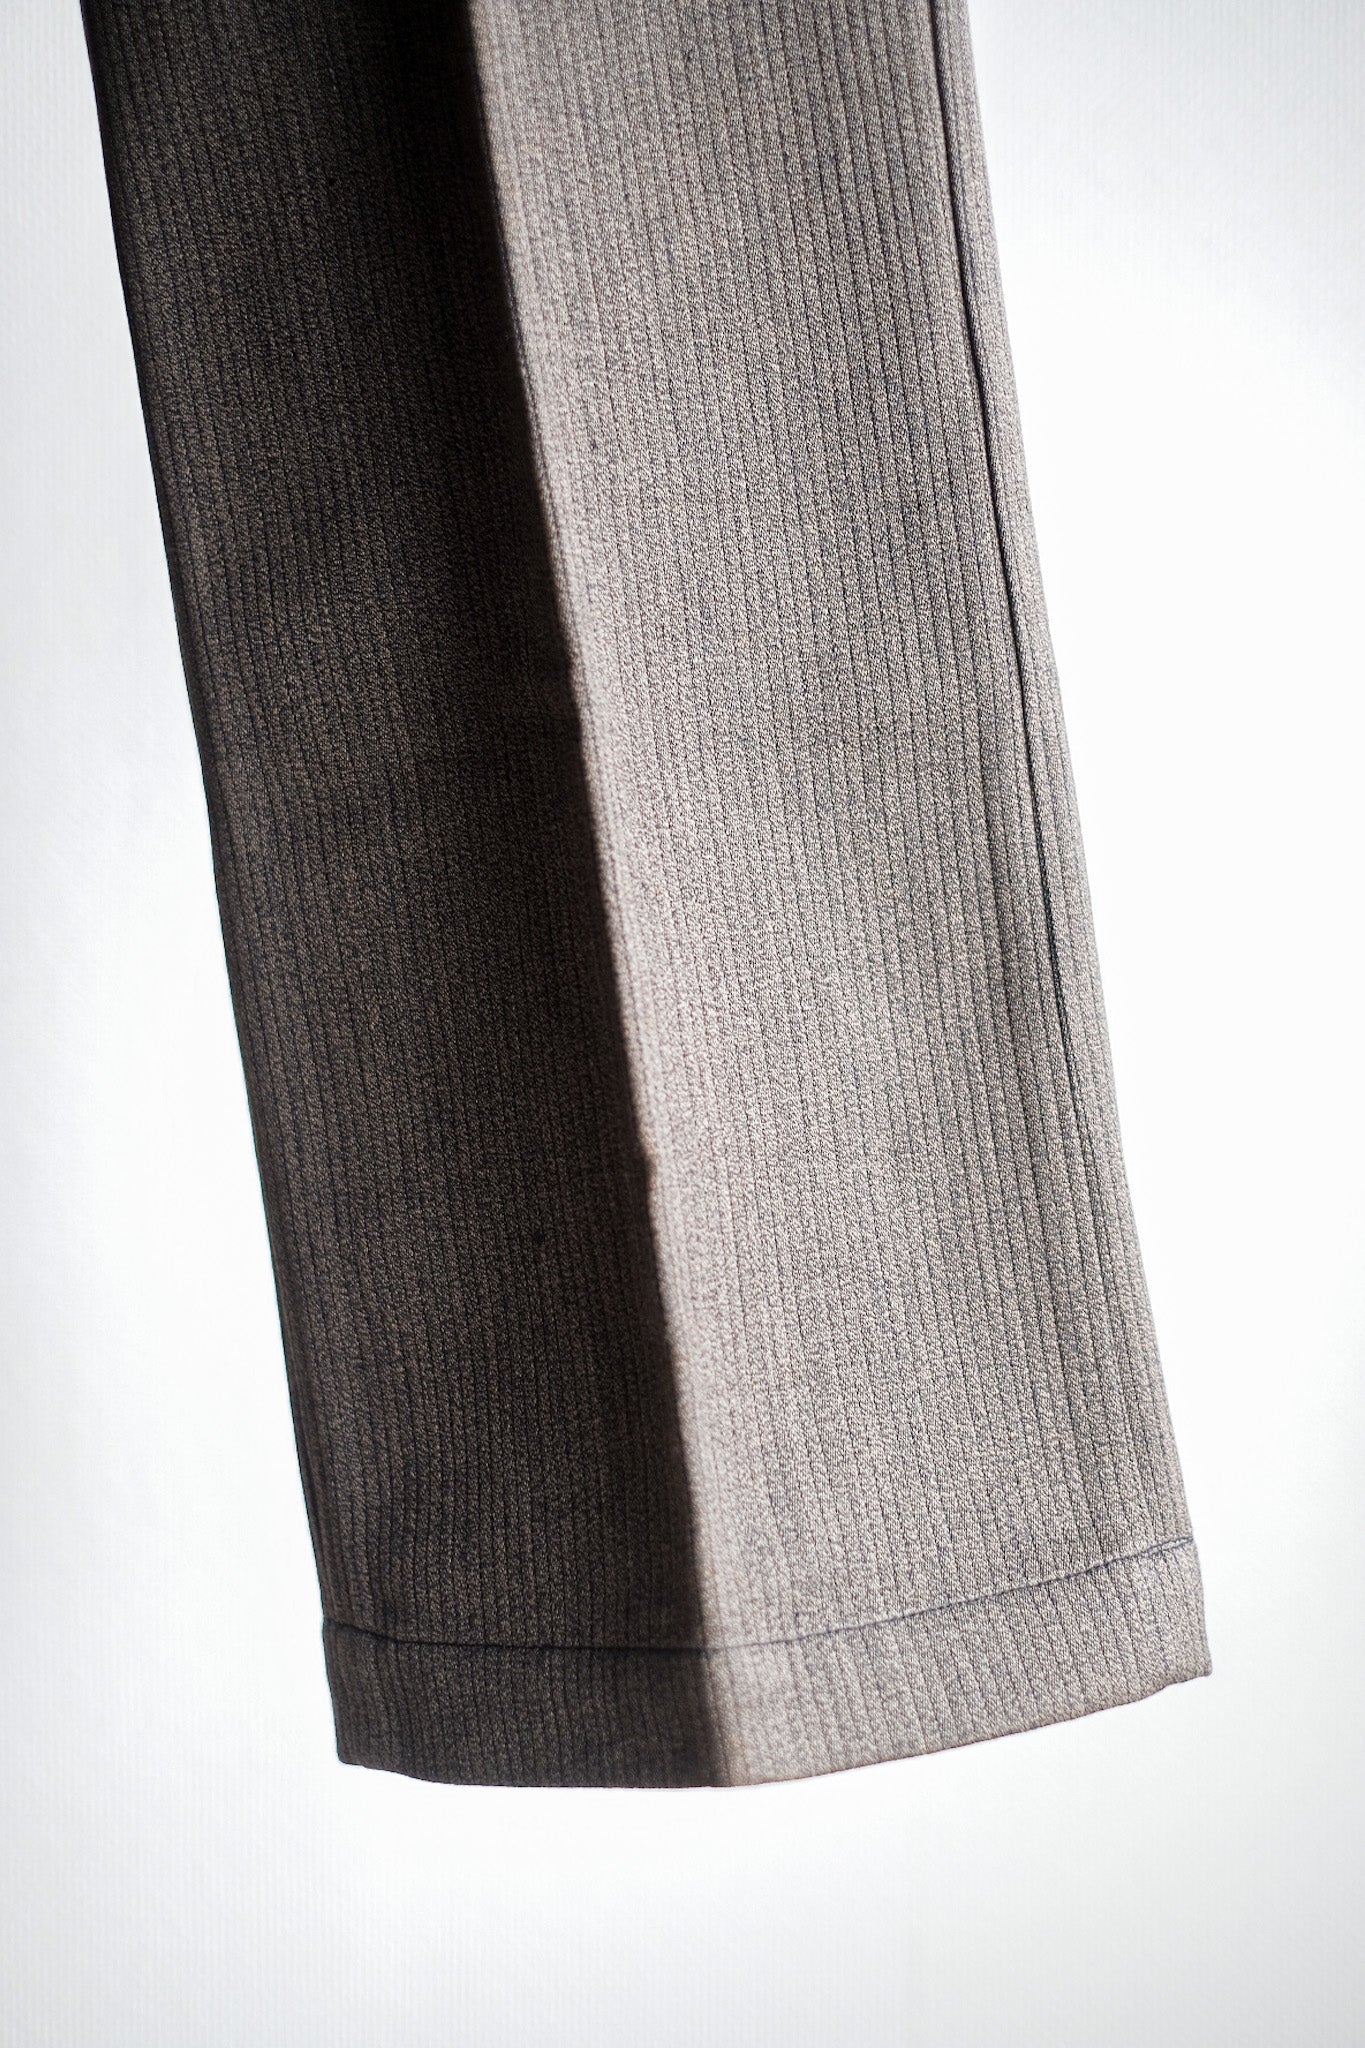 [~ 40's] Pantalon de sel brun vintage français Pantalon de coton de coton "Stock mort"